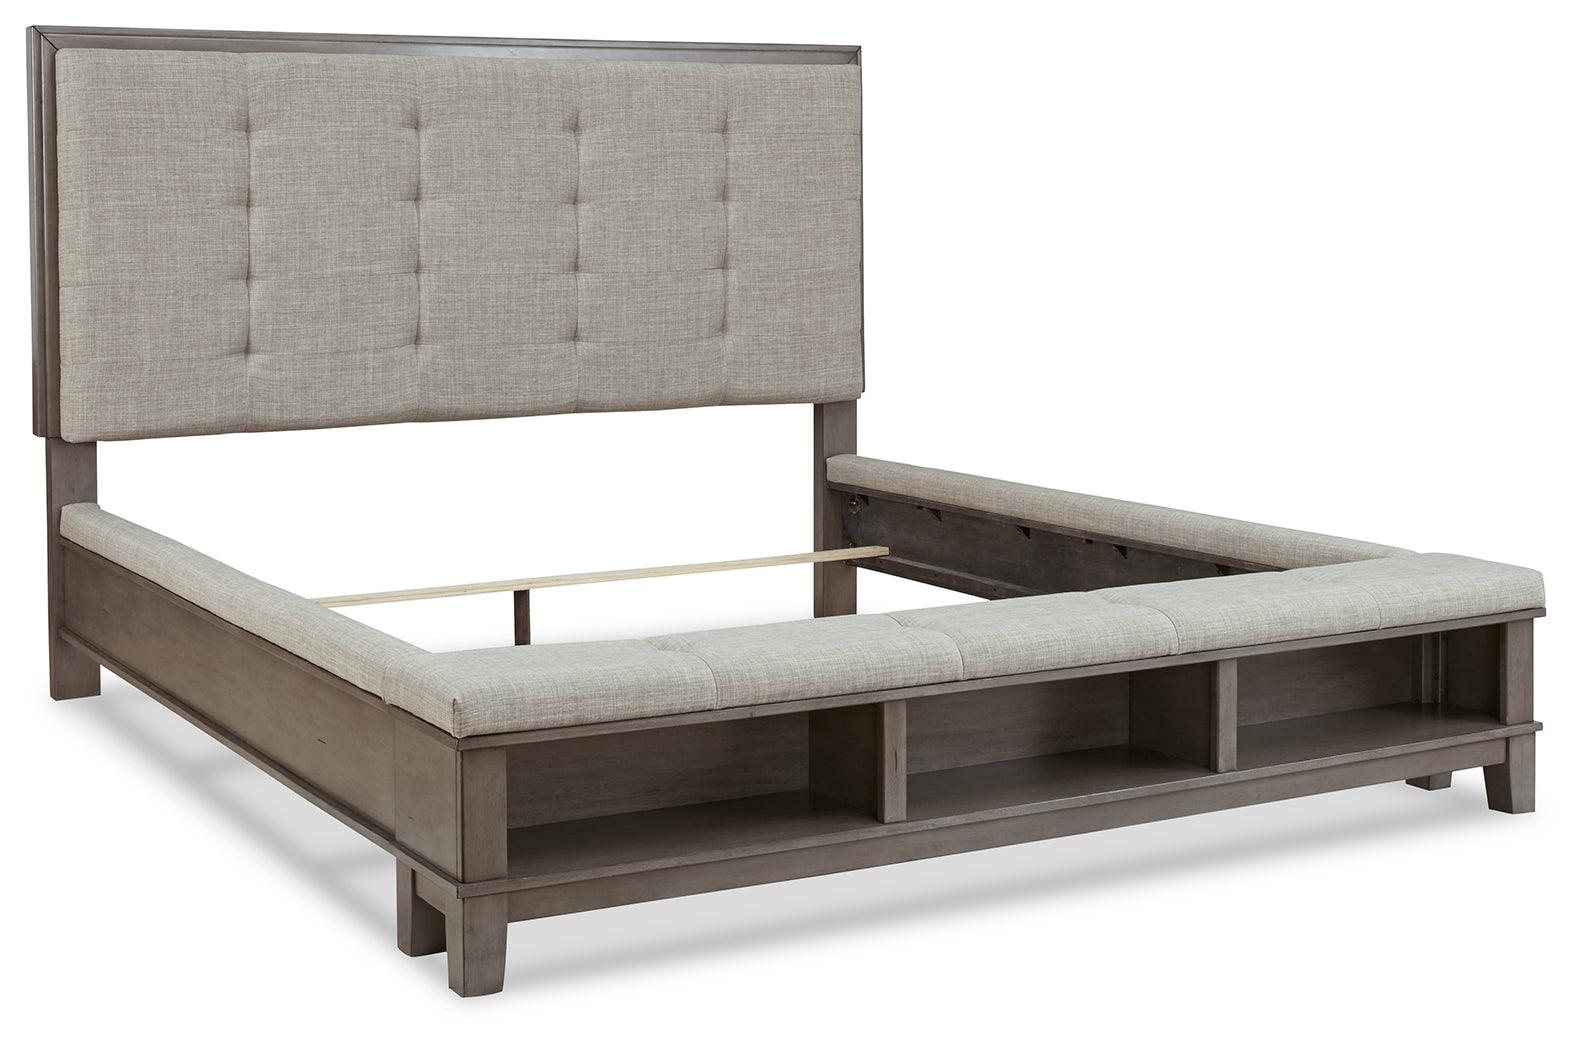 Hallanden Gray Queen Panel Bed With Storage - Ella Furniture